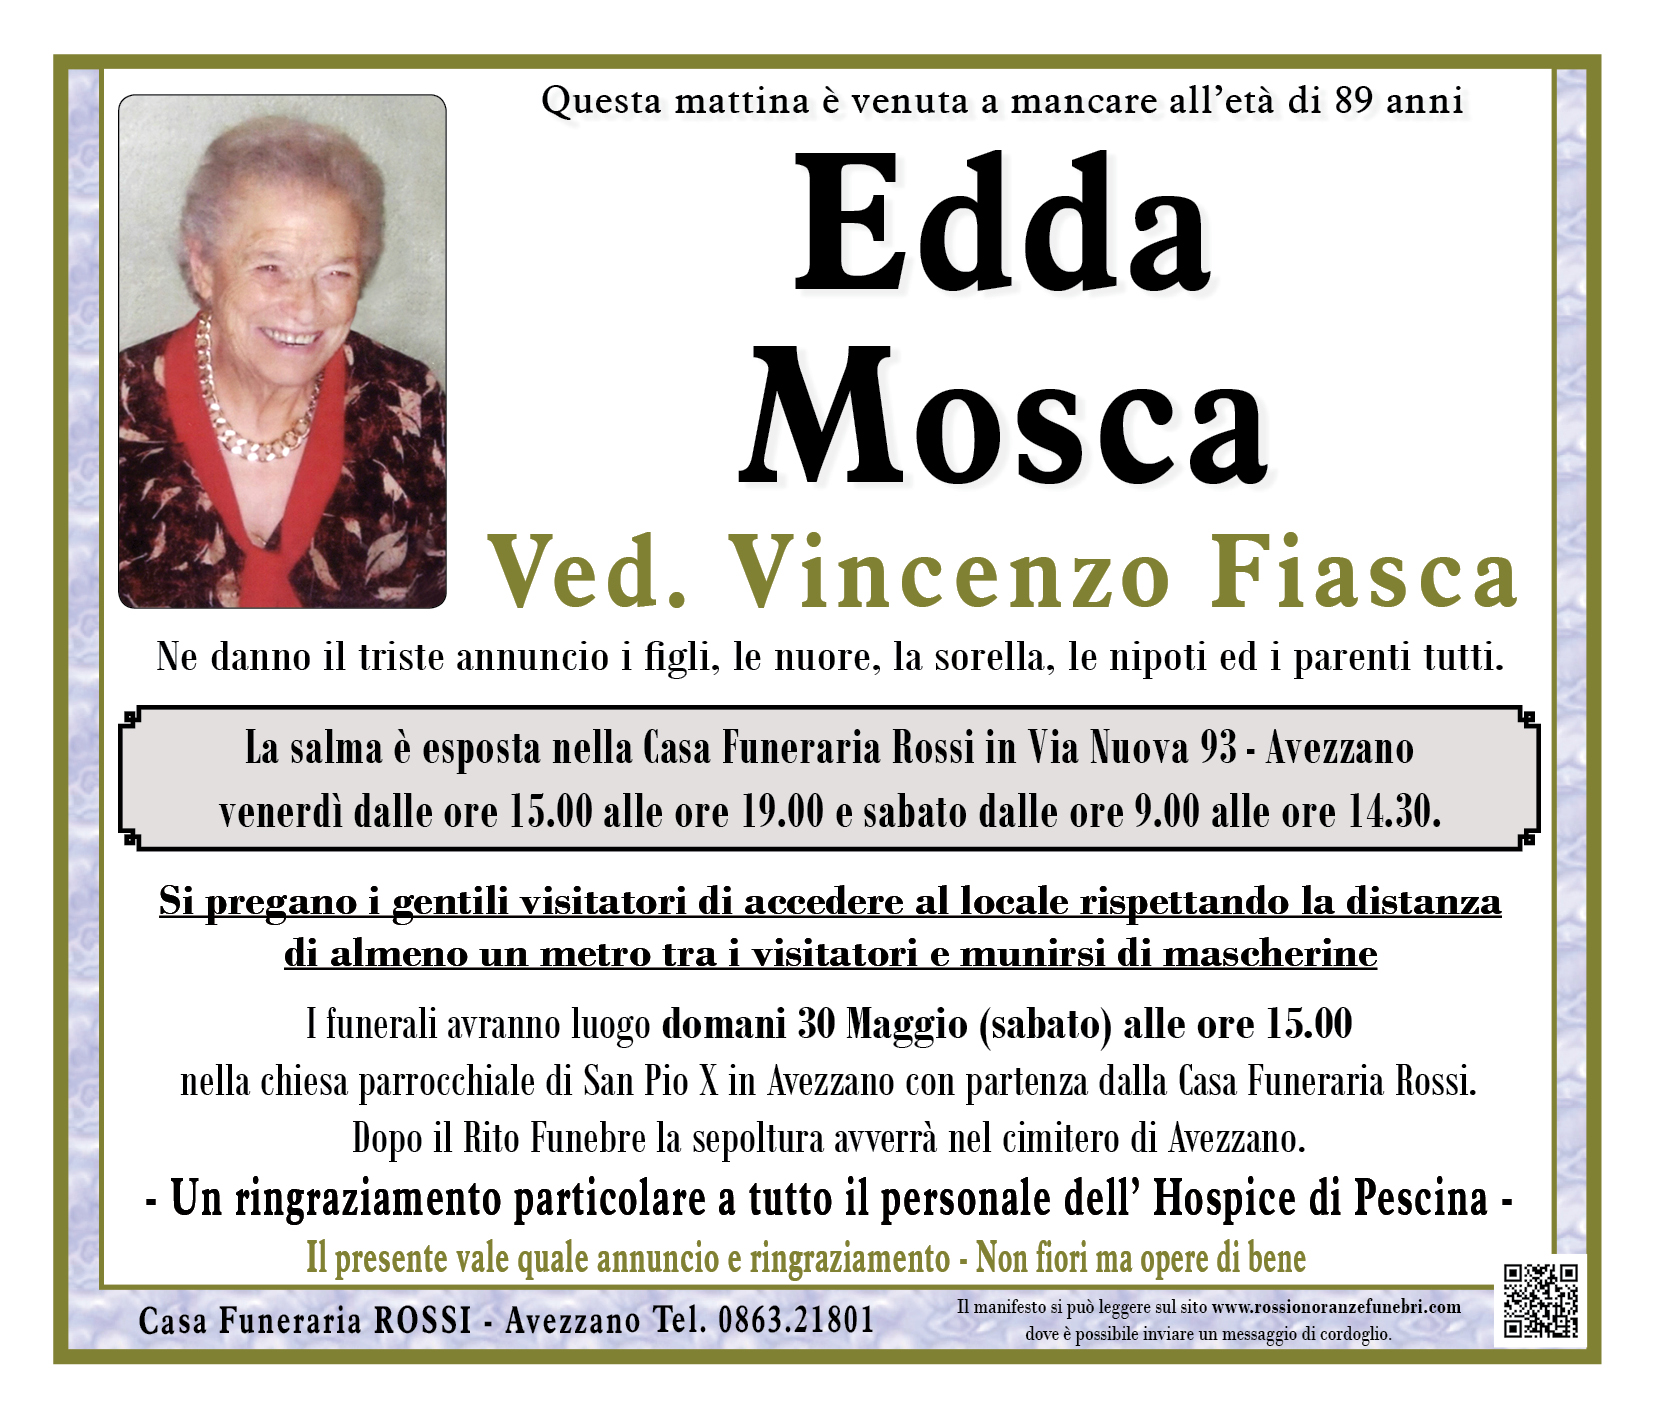 Edda Mosca